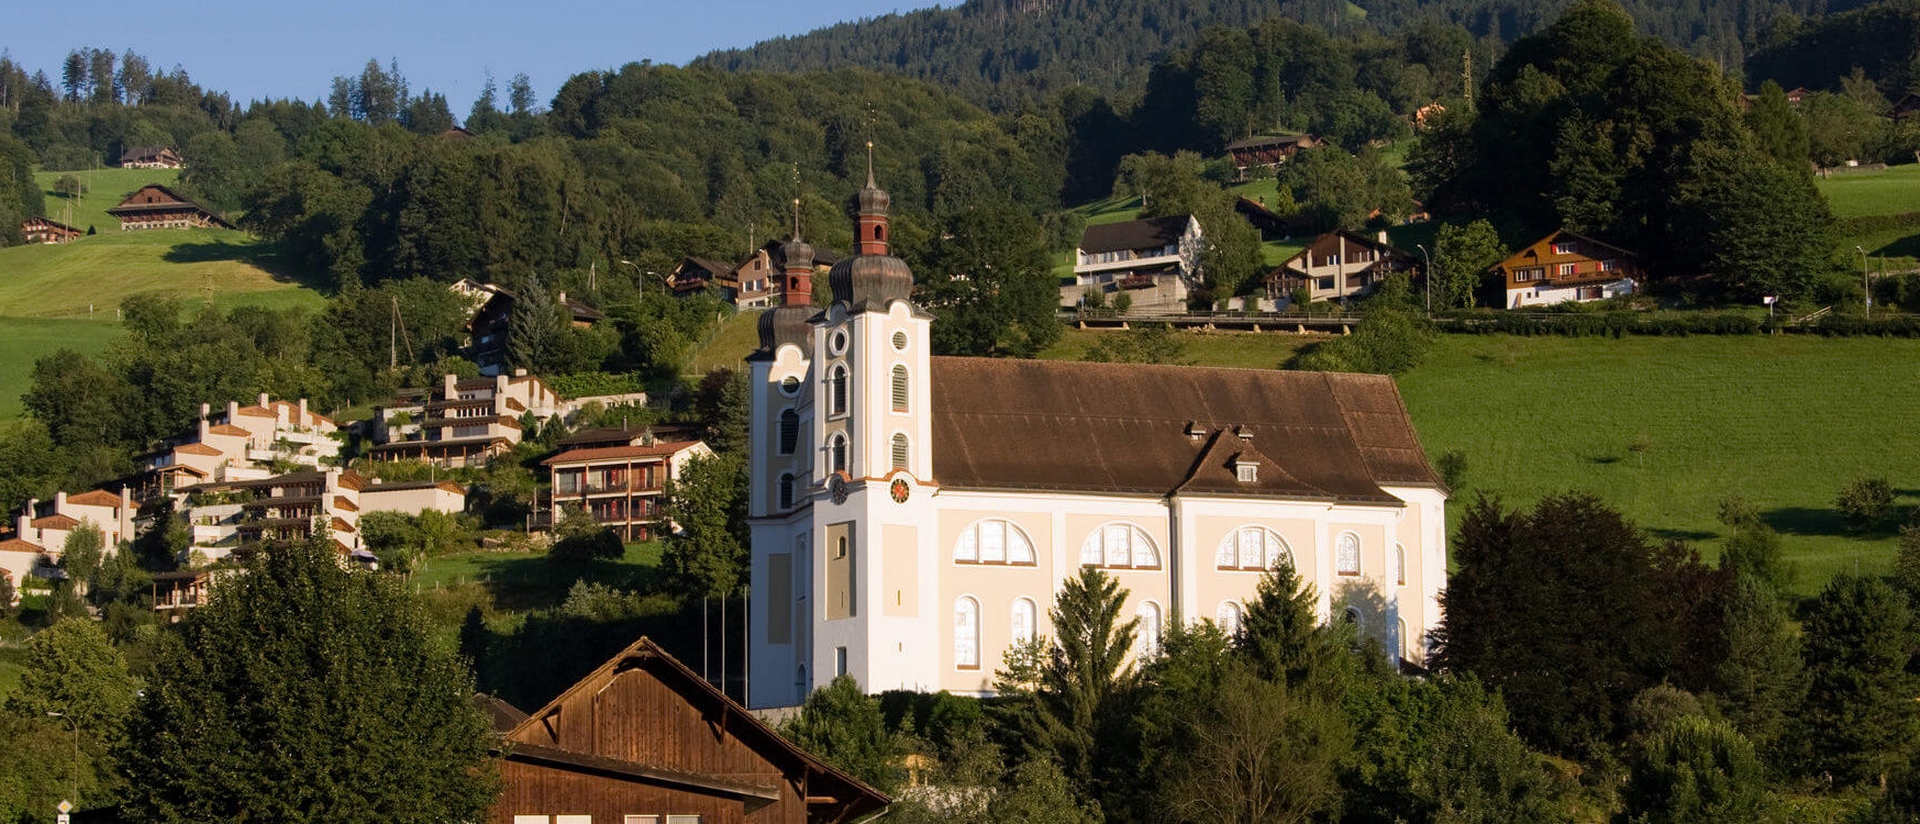 L'église Sts Pierre et Paul de Sarnen dans le canton d'Obwald | DR